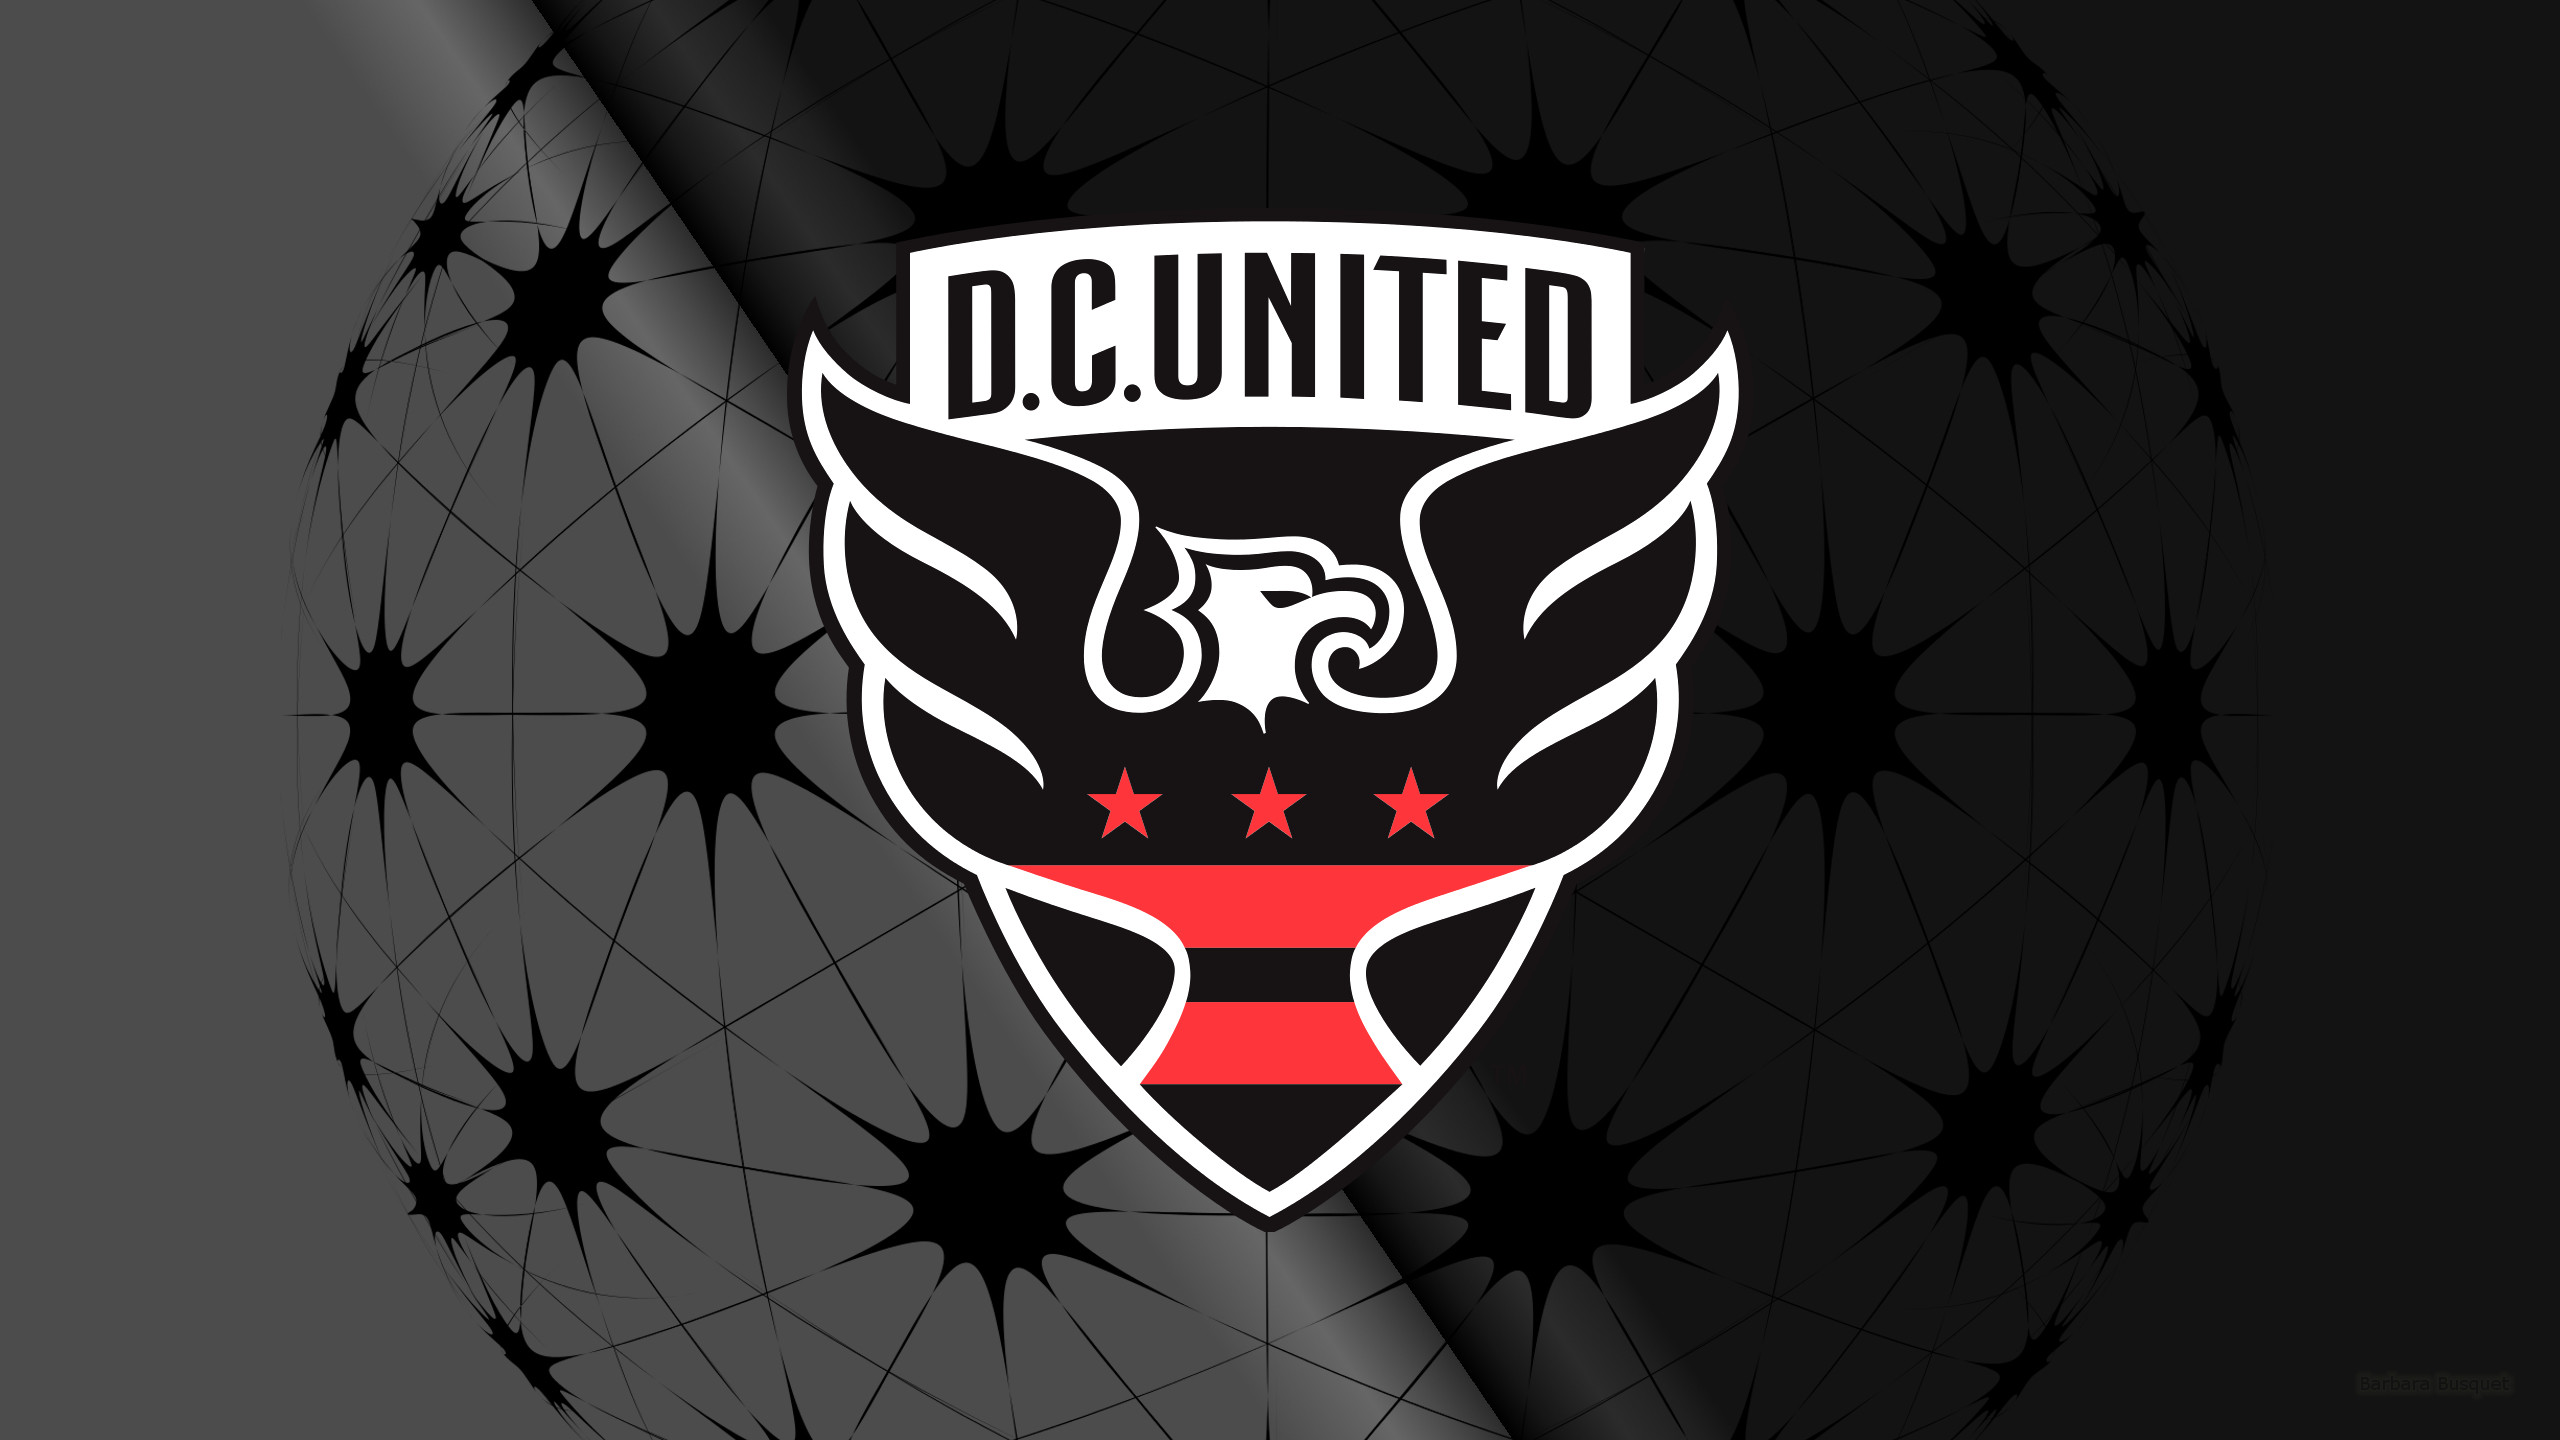 D C United Emblem Logo Mls Soccer 2560x1440